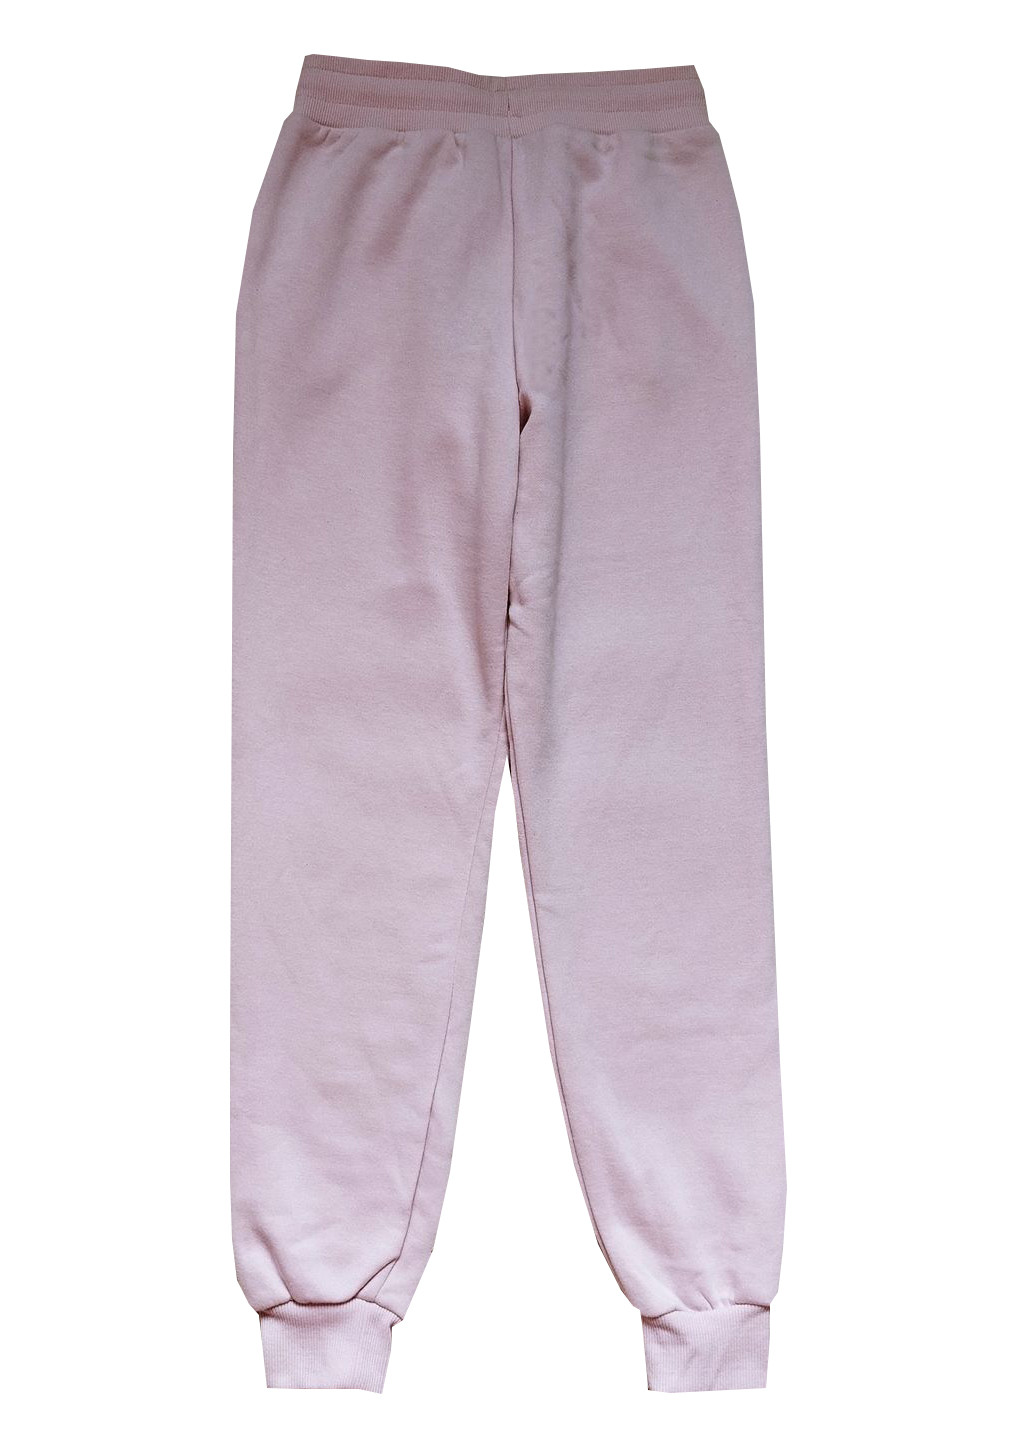 Розовые спортивные демисезонные джоггеры брюки Primark